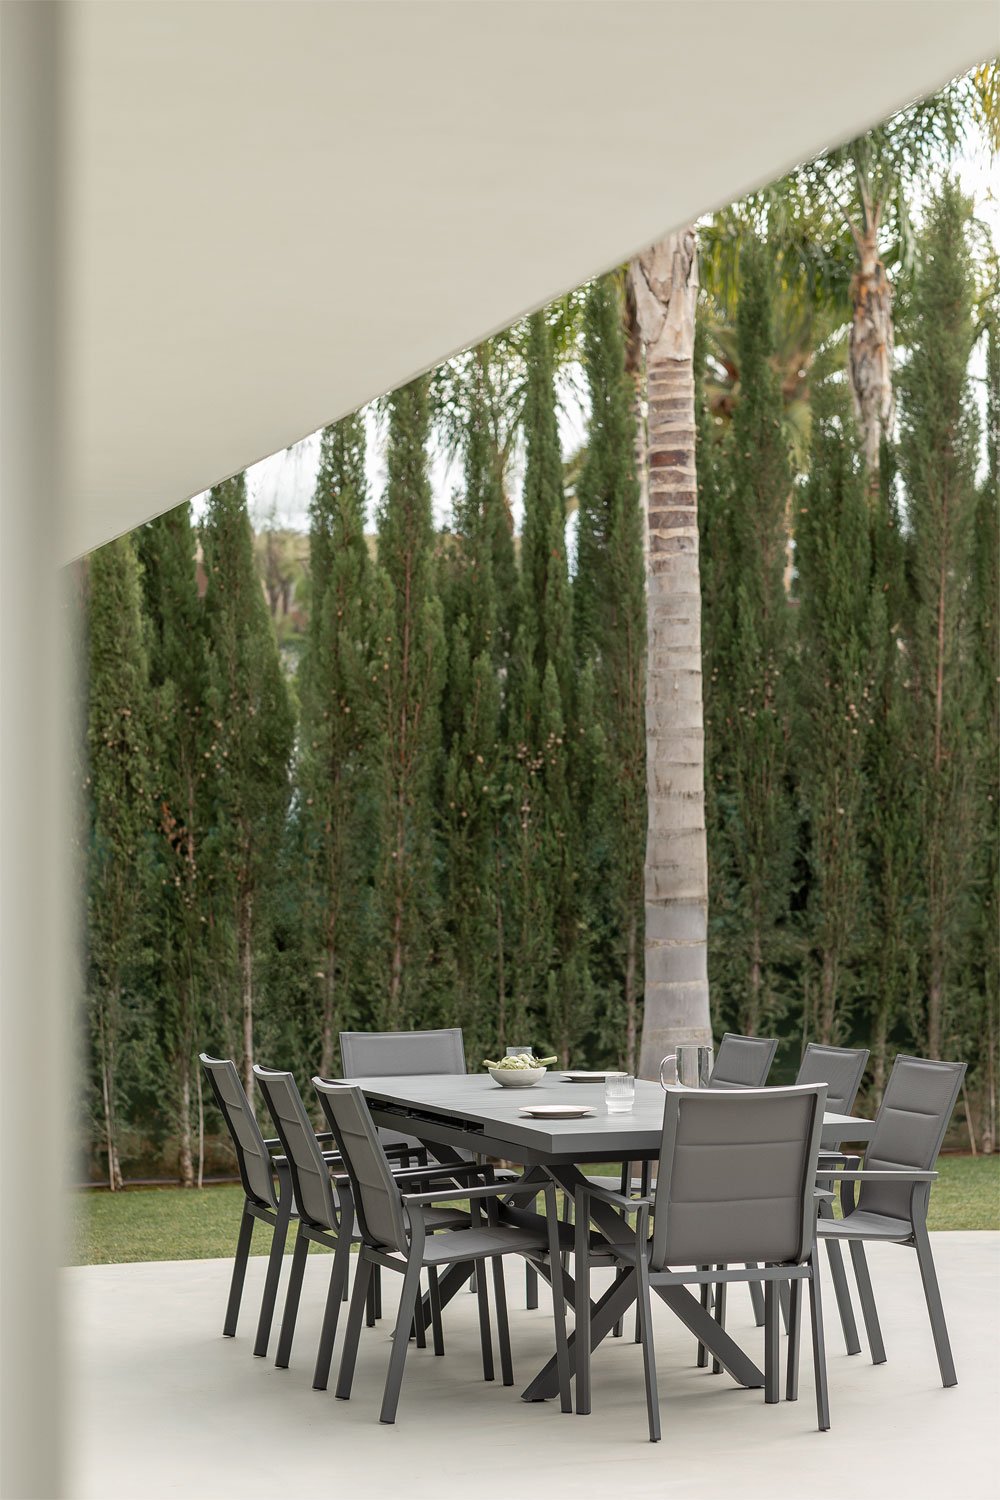 Uitschuifbare rechthoekige tafelset (180-240x90 cm) en 8 stapelbare aluminium tuinstoelen Karena, galerij beeld 1